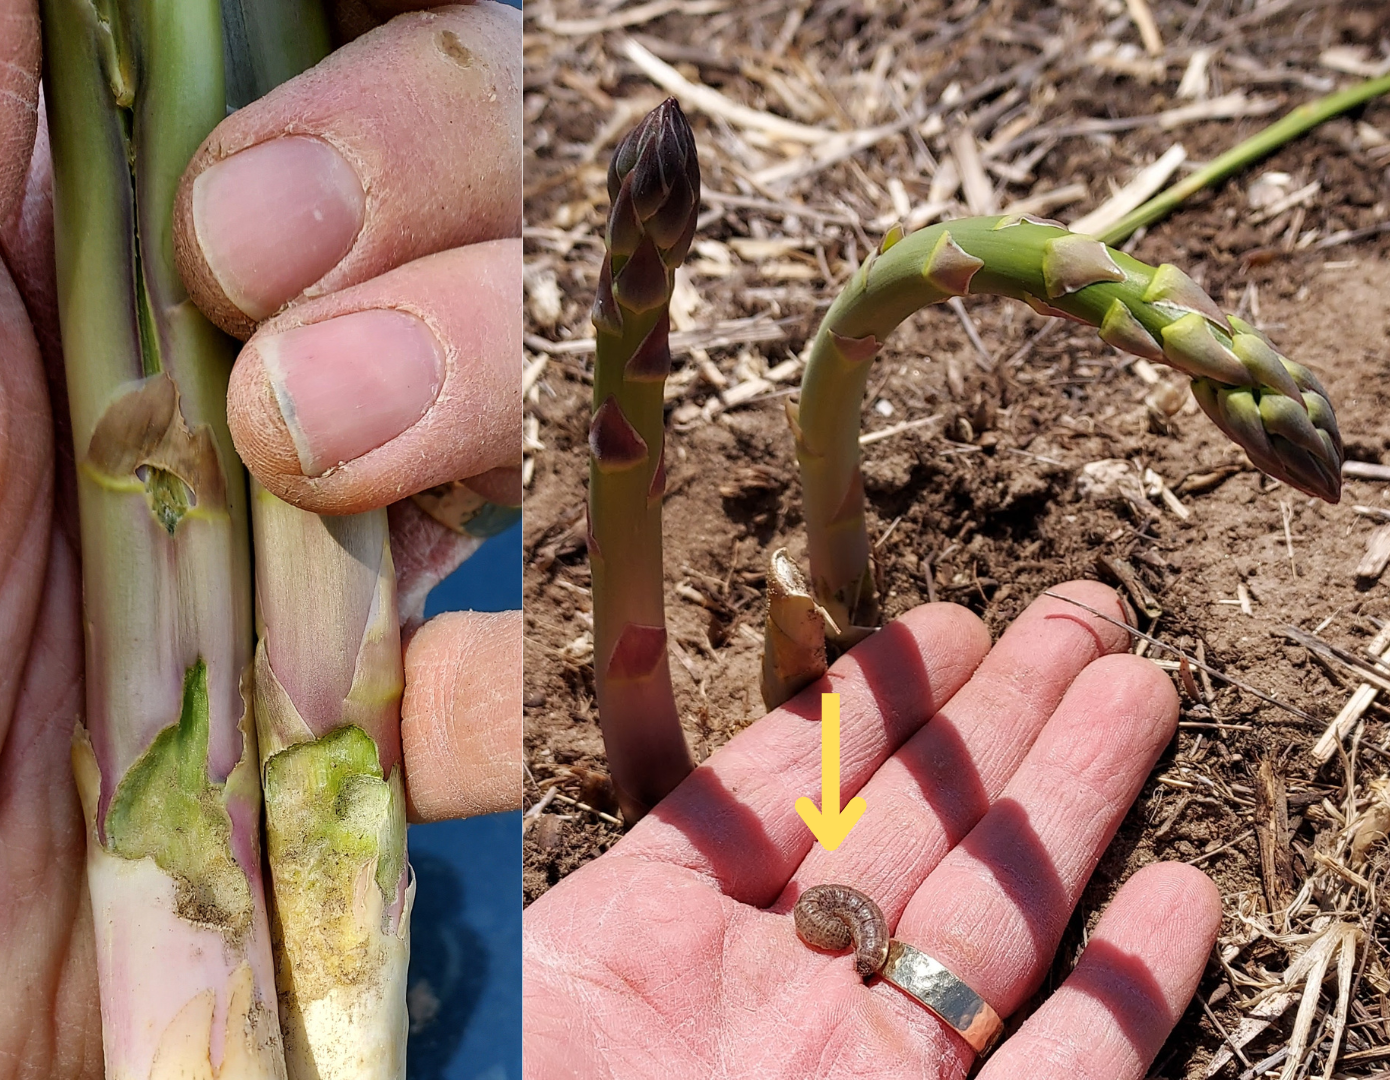 Cutworm feeding on asparagus.